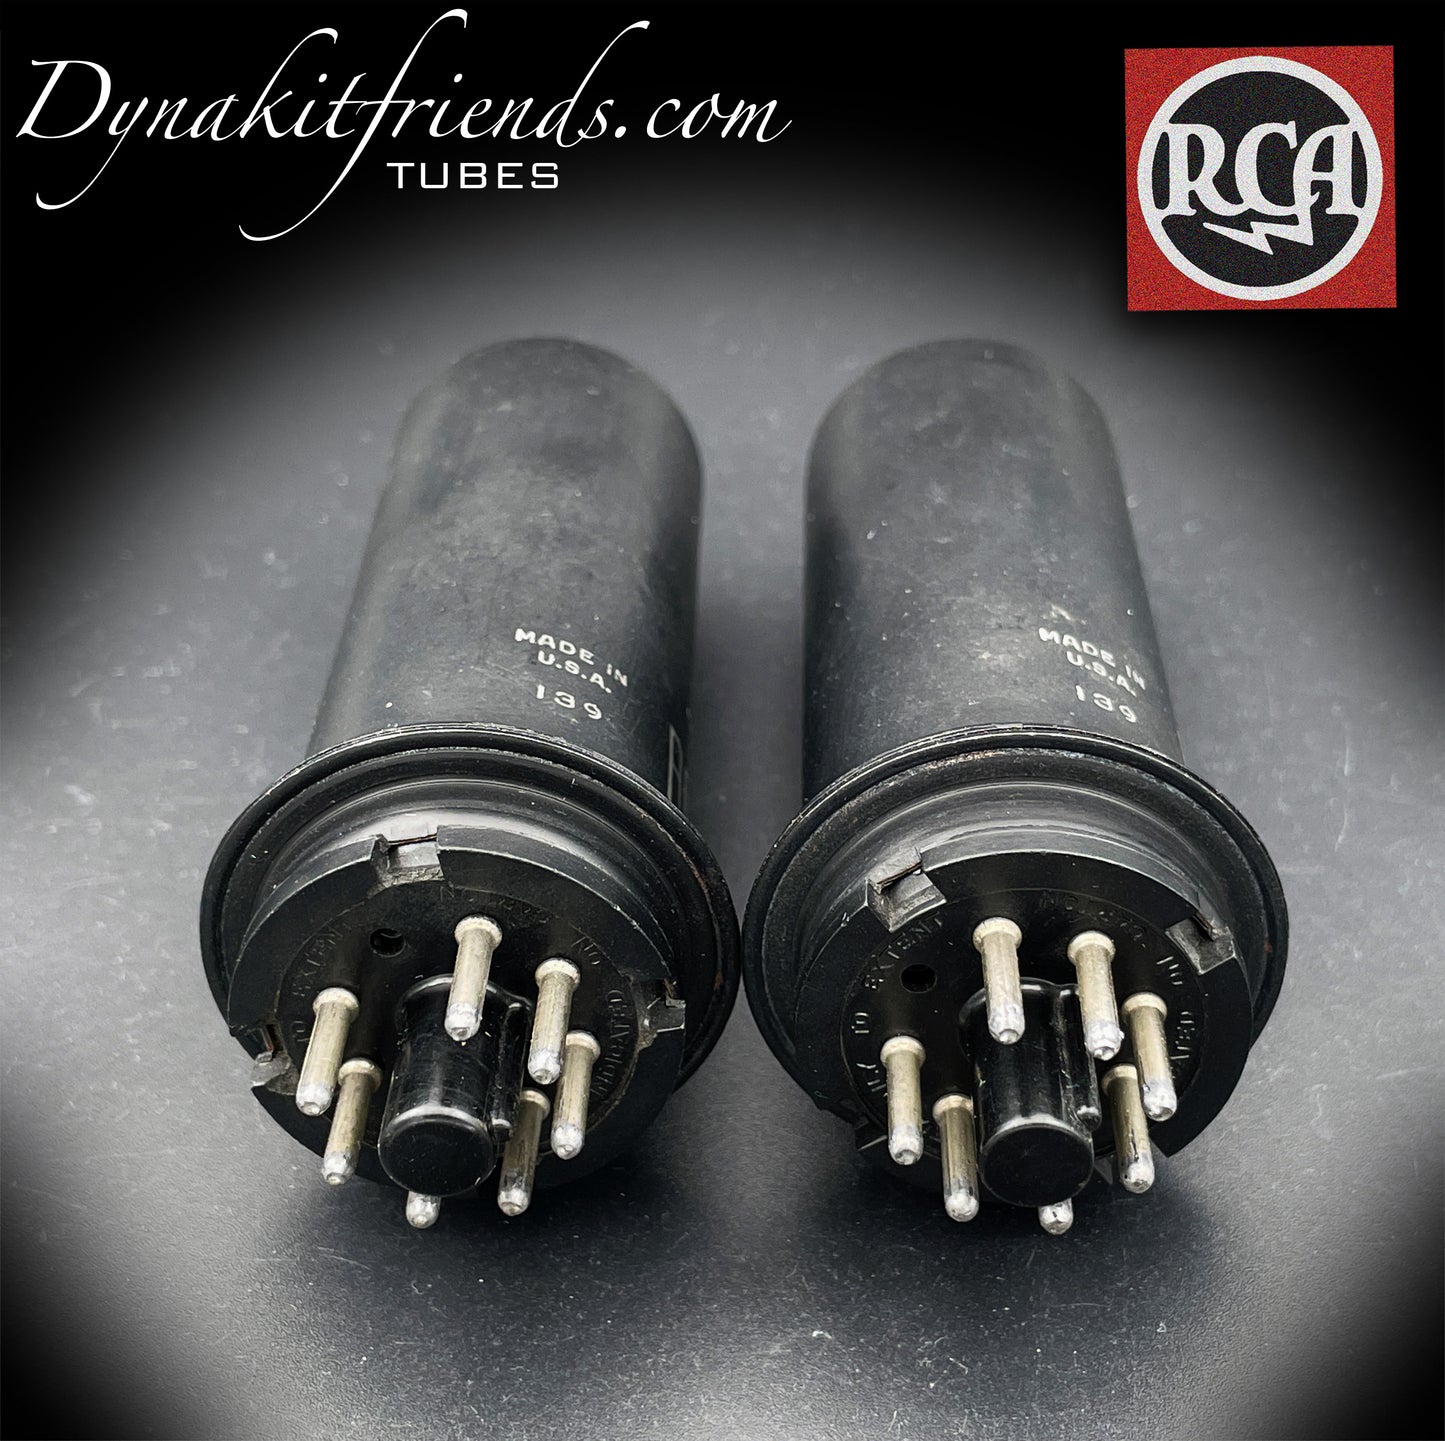 6L6 RCA NOS Metalldose, passendes Röhrenpaar, gleiche Datencodes, hergestellt 1951 in den USA